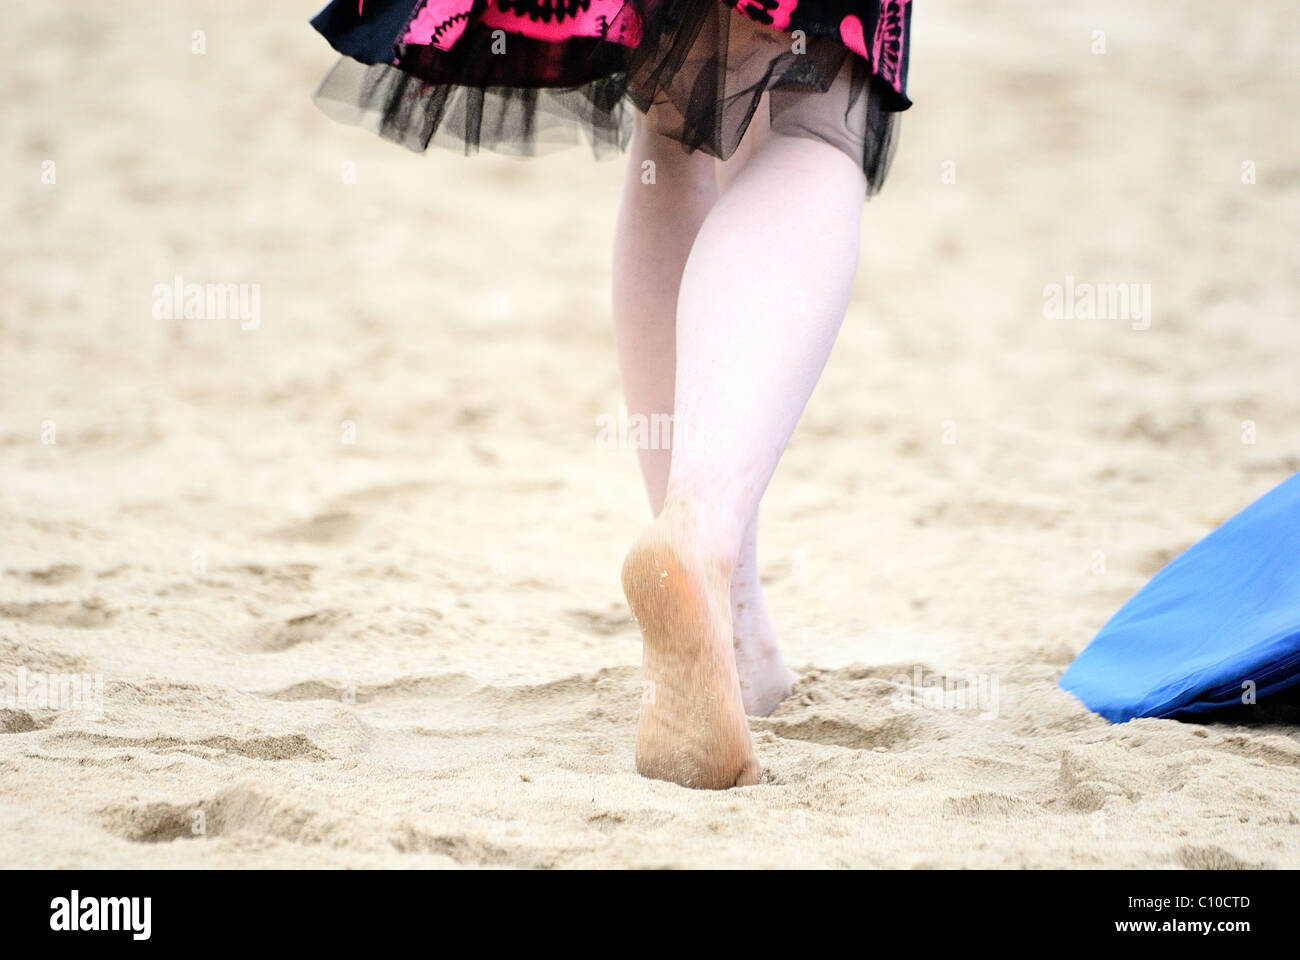 Un par de pies caminando por la playa en un vestido rosado y negro, caminando sobre la arena puedes ver la suela de un pie. Foto de stock